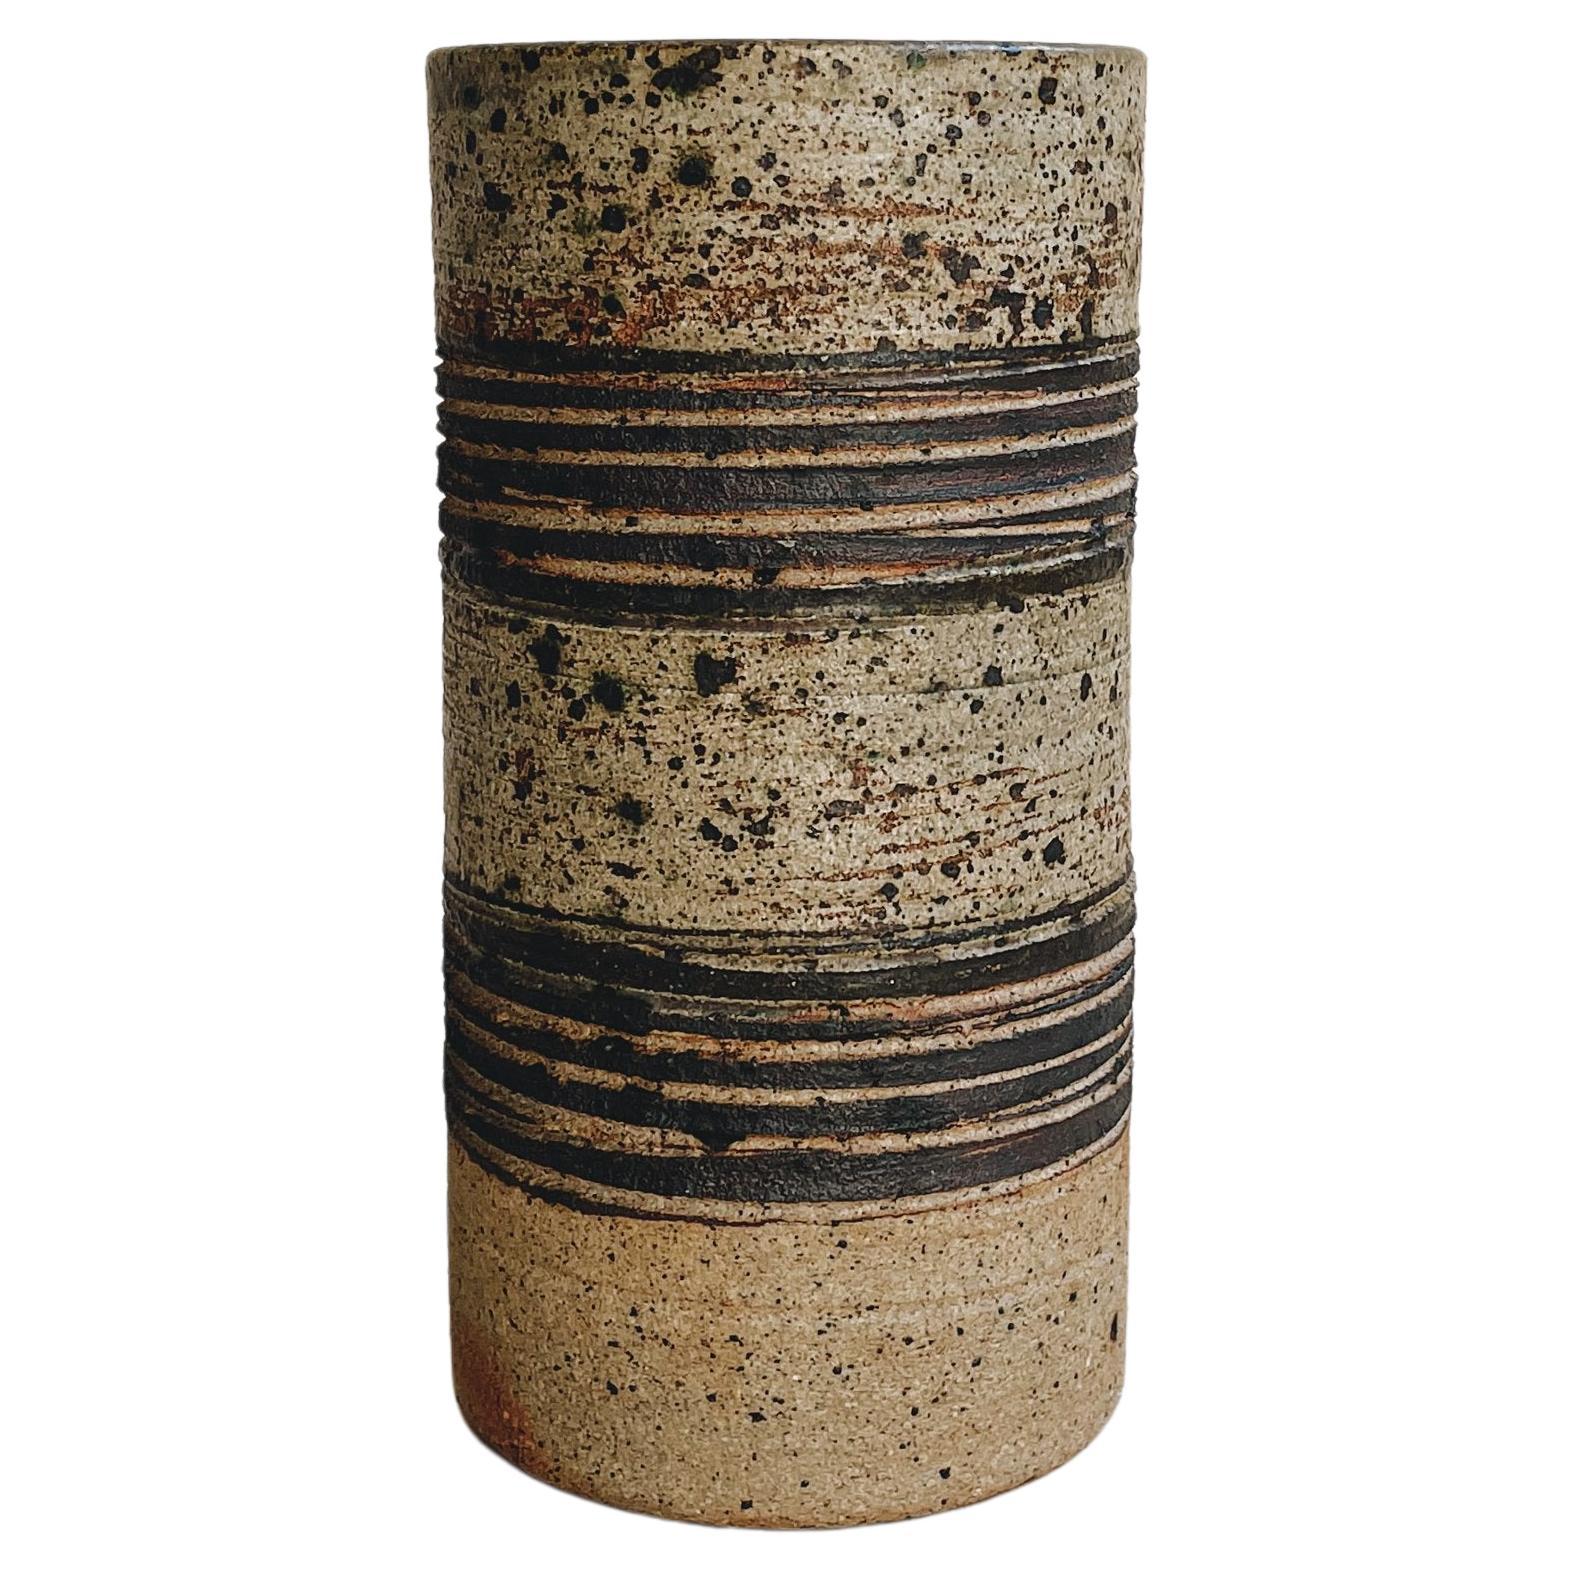 JAPANESE STONEWARE Cylindrical Vase Vintage Rustic Mid Century  9